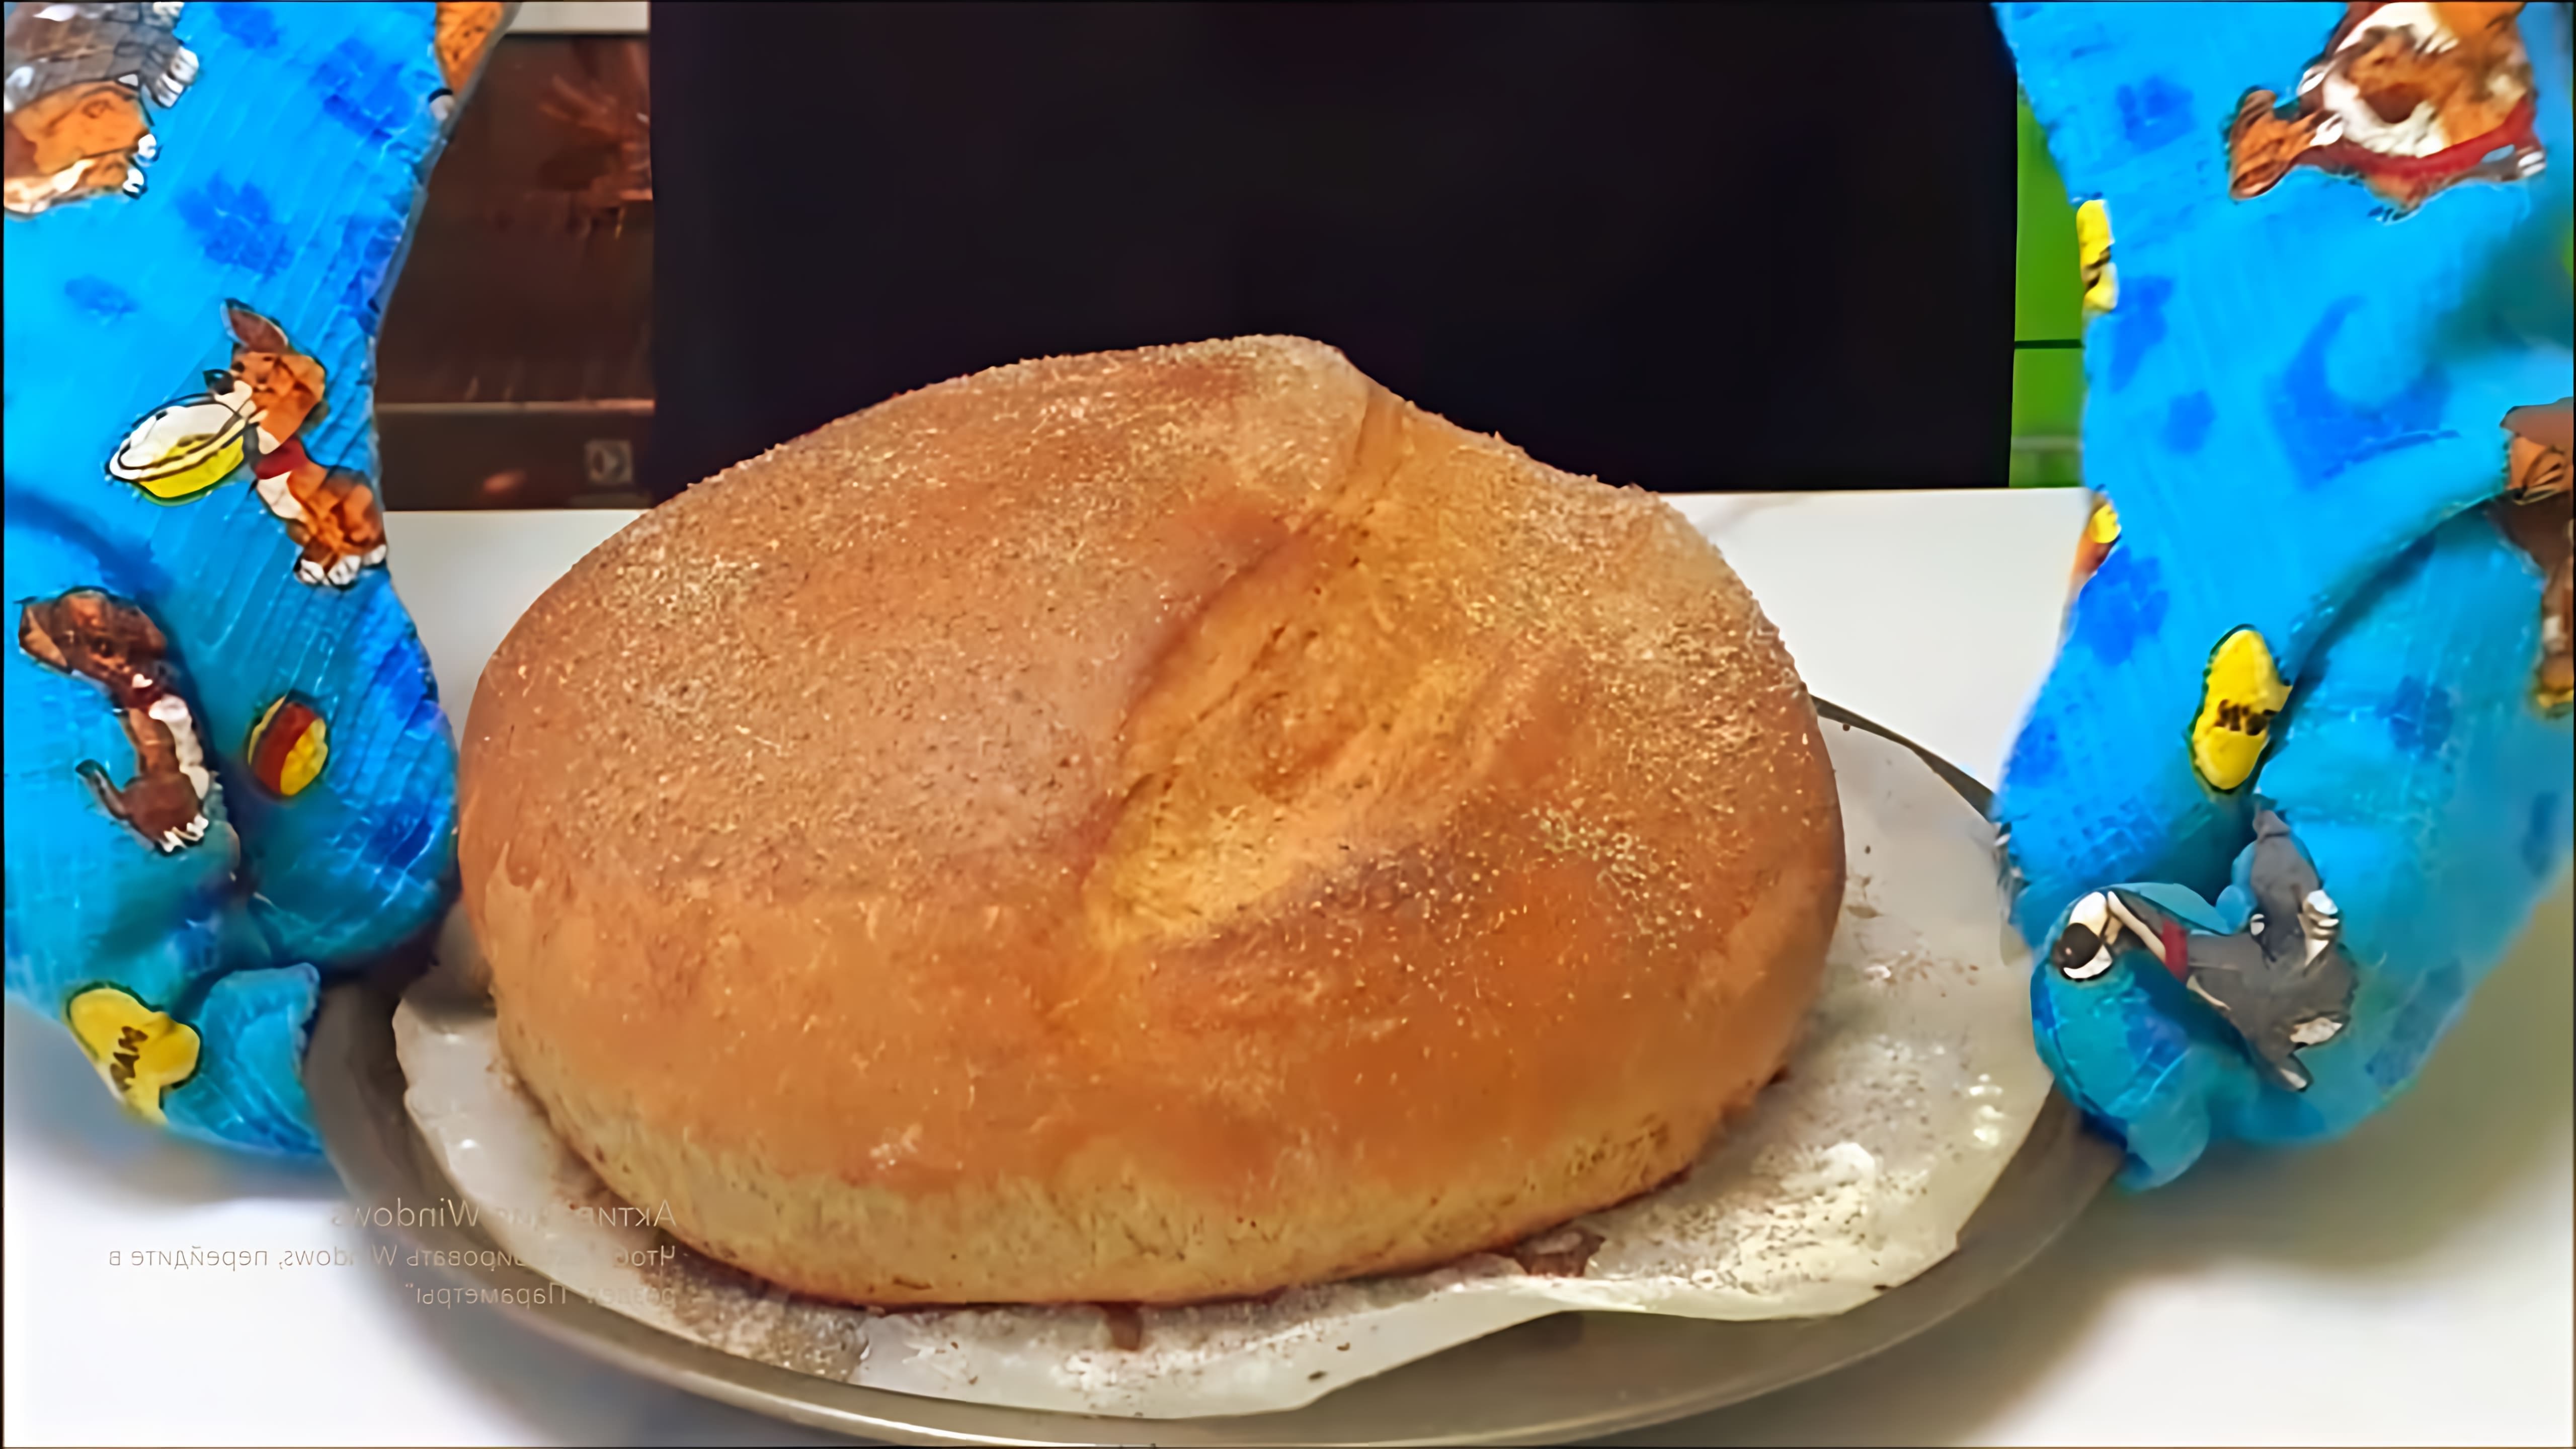 В этом видео демонстрируется рецепт приготовления хлеба из цельнозерновой муки